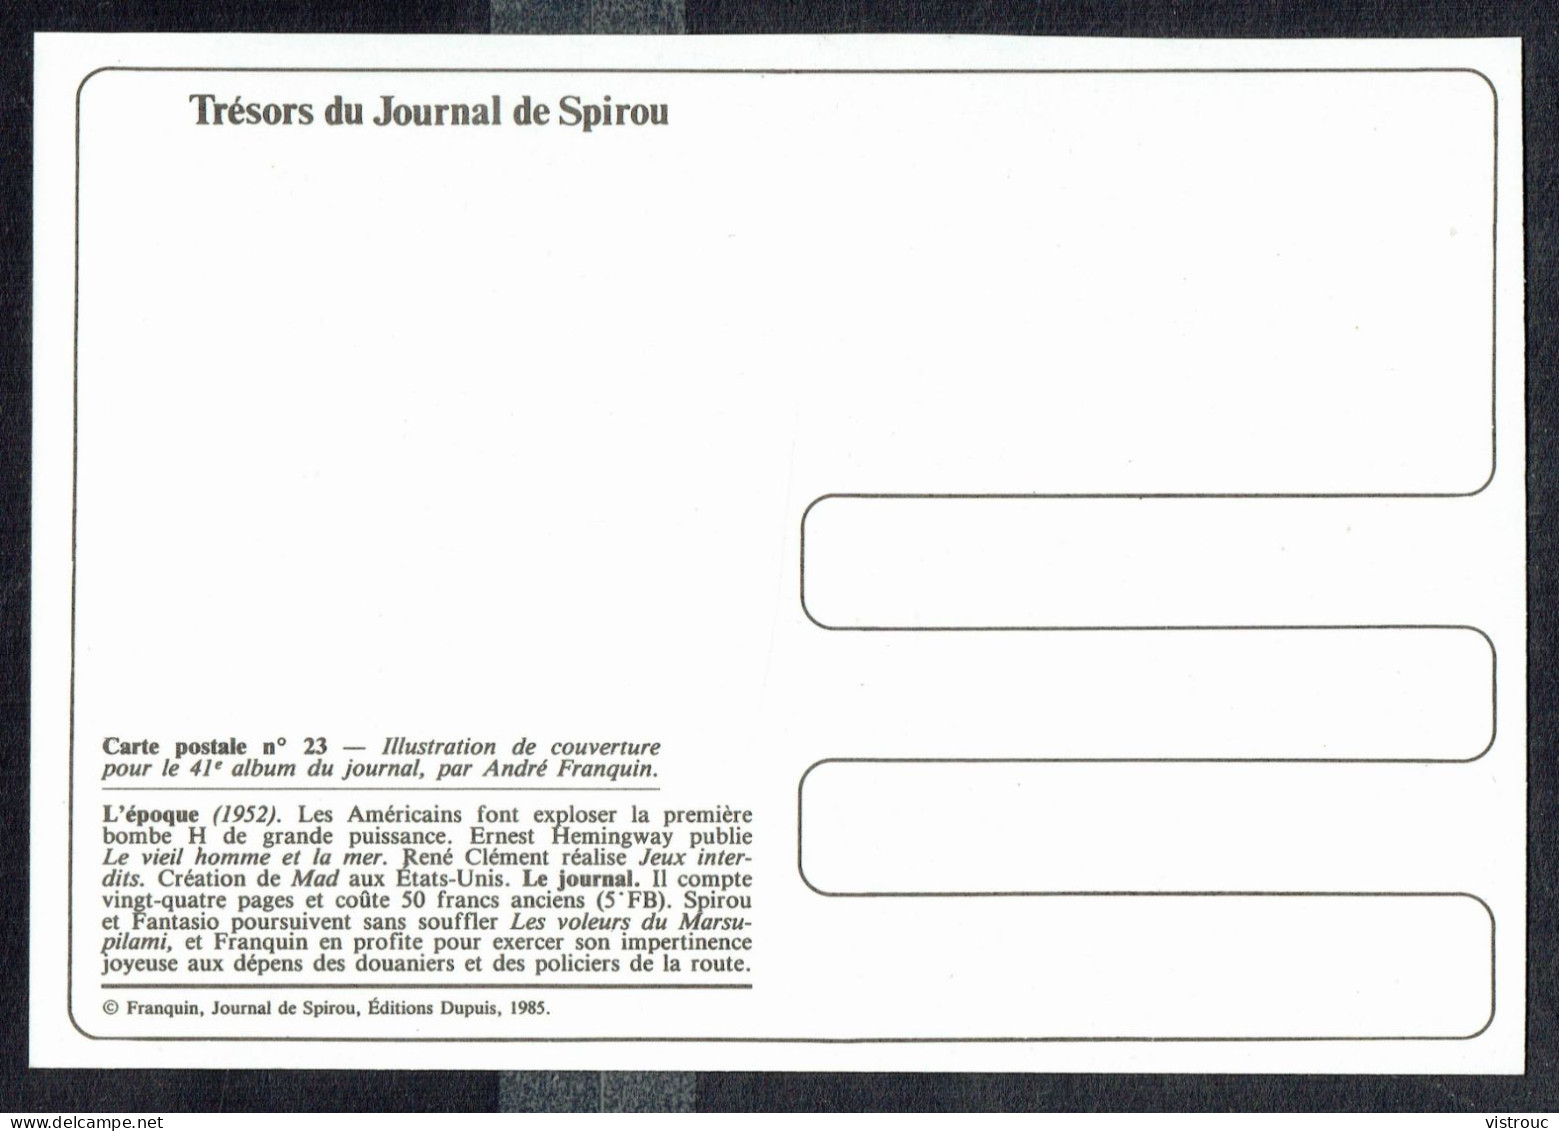 SPIROU - CP N° 23 : Illustration Couverture Album N° 41 De FRANQUIN - Non Circulé - Not Circulated - Ed. DUPUIS - 1985. - Bandes Dessinées